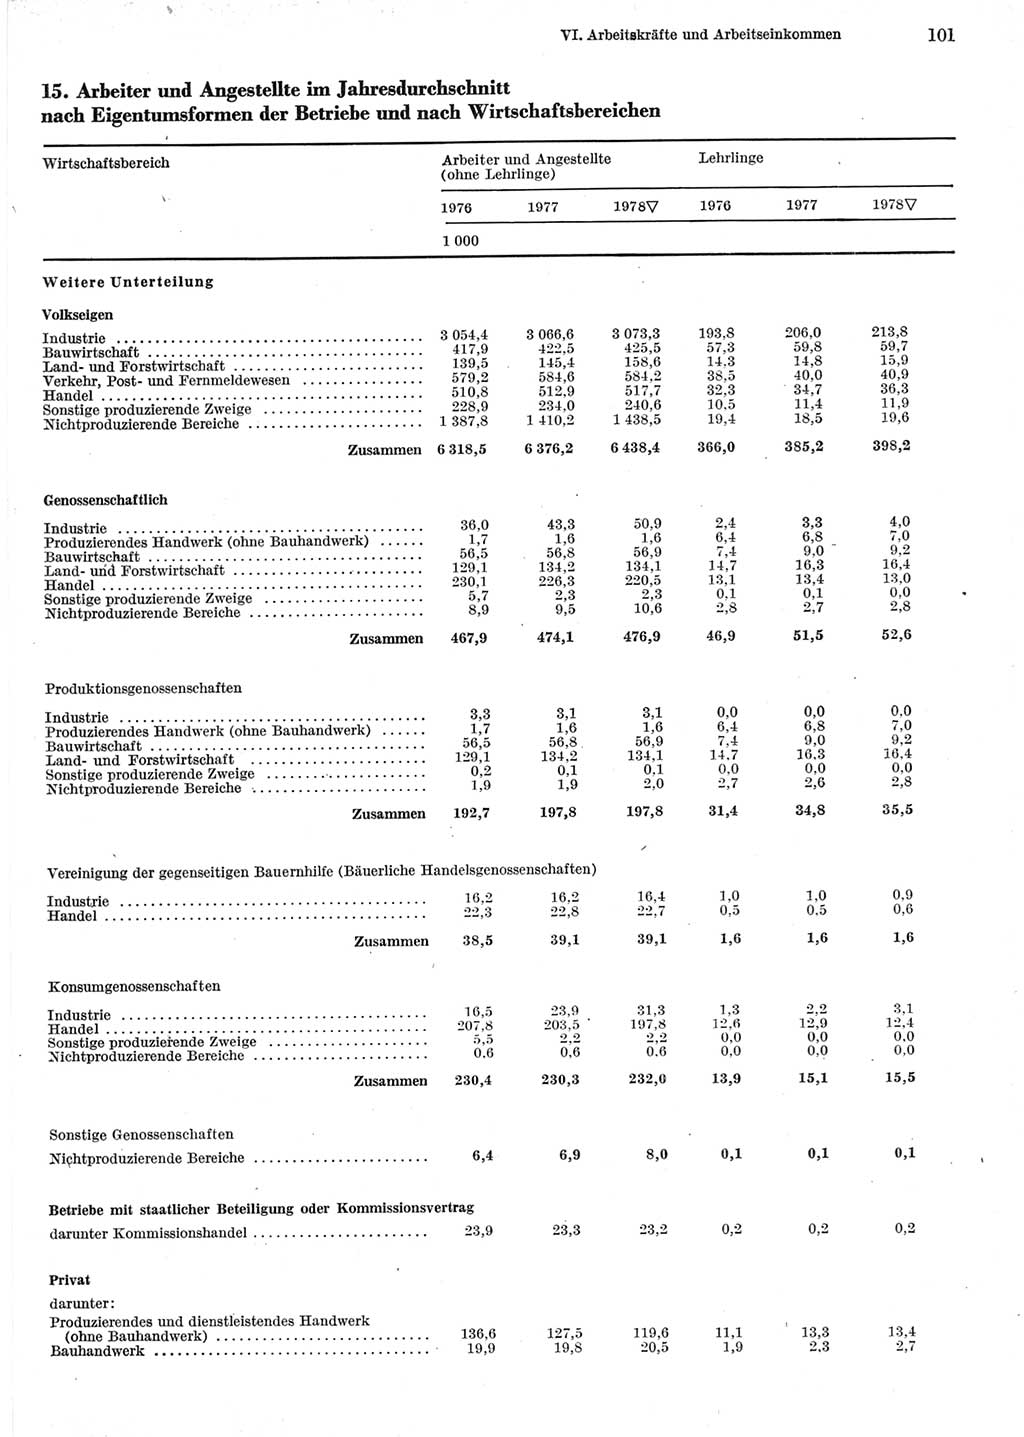 Statistisches Jahrbuch der Deutschen Demokratischen Republik (DDR) 1979, Seite 101 (Stat. Jb. DDR 1979, S. 101)